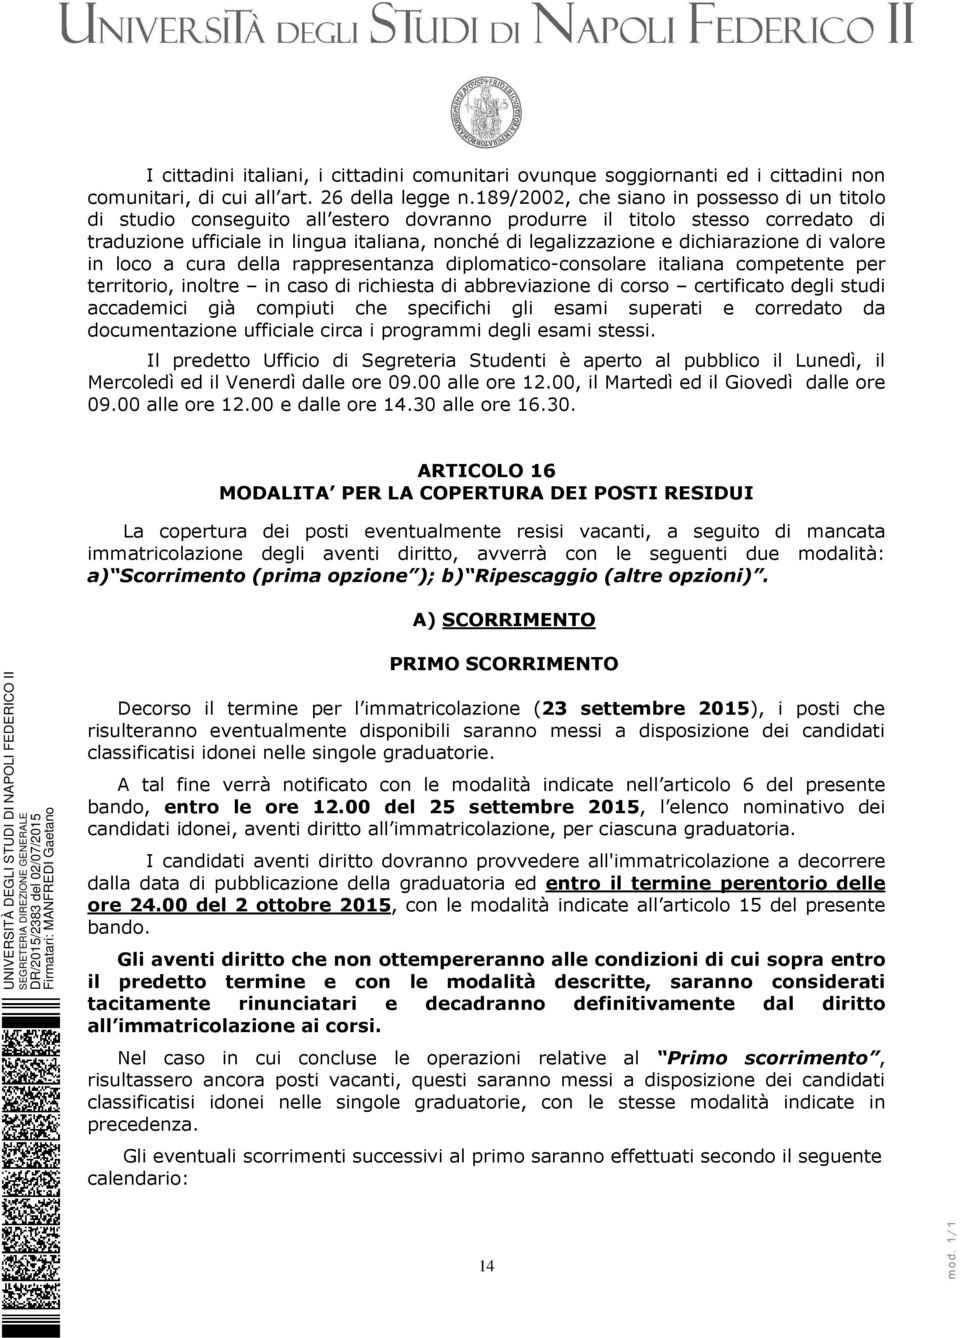 dichiarazione di valore in loco a cura della rappresentanza diplomatico-consolare italiana competente per territorio, inoltre in caso di richiesta di abbreviazione di corso certificato degli studi